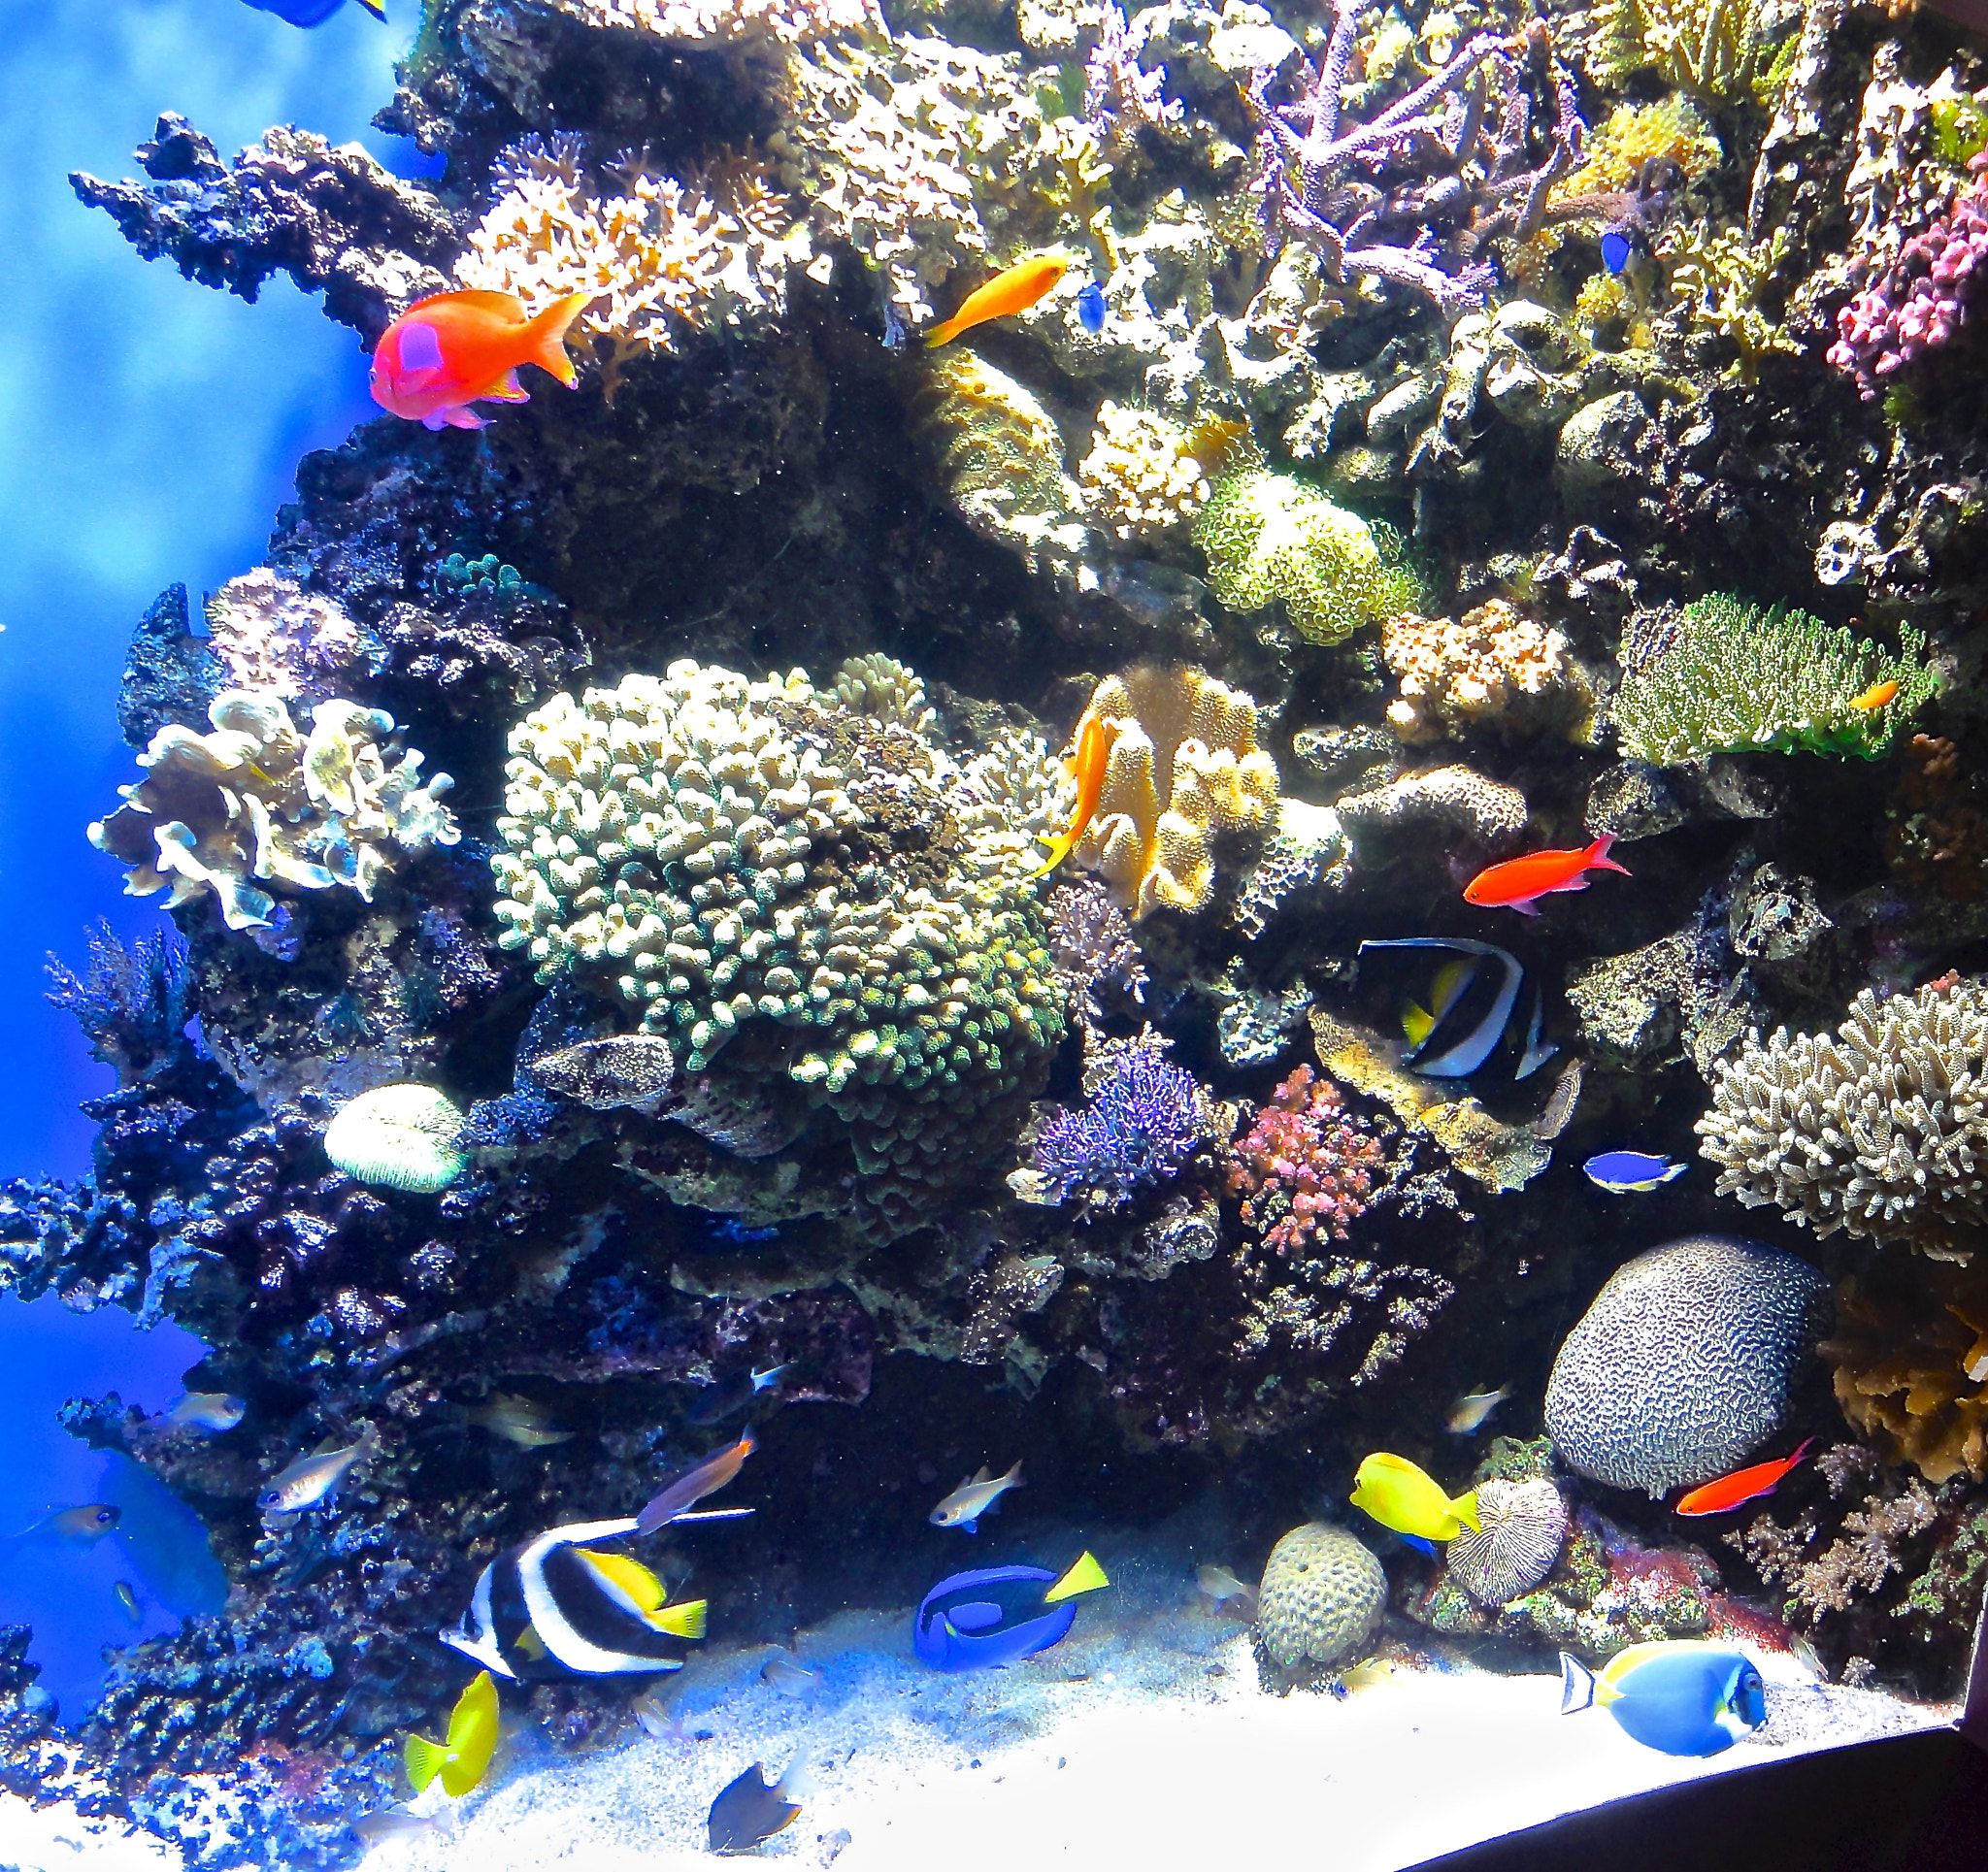 Sony DSC-HX5V sample photo. Monterey bay aquarium photography